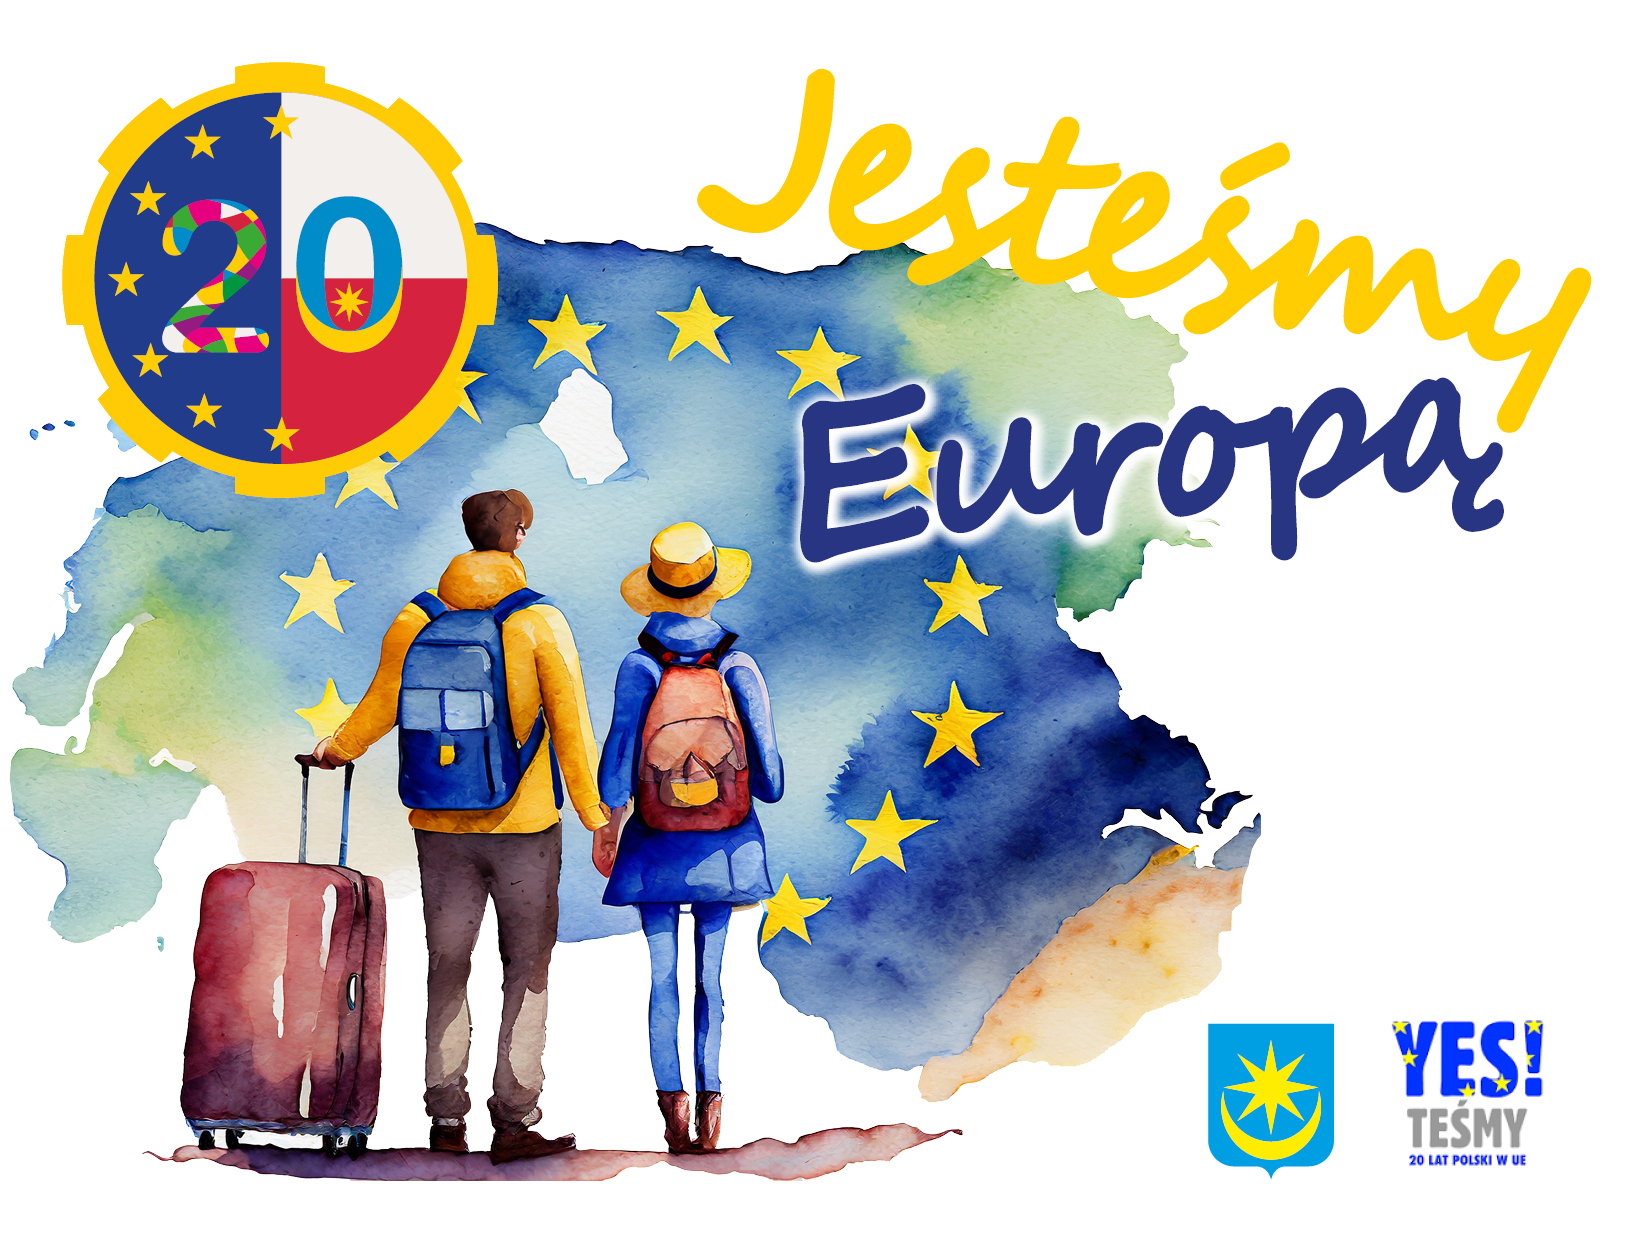 „Jesteśmy Europą” – piknik europejski 1 maja 2024